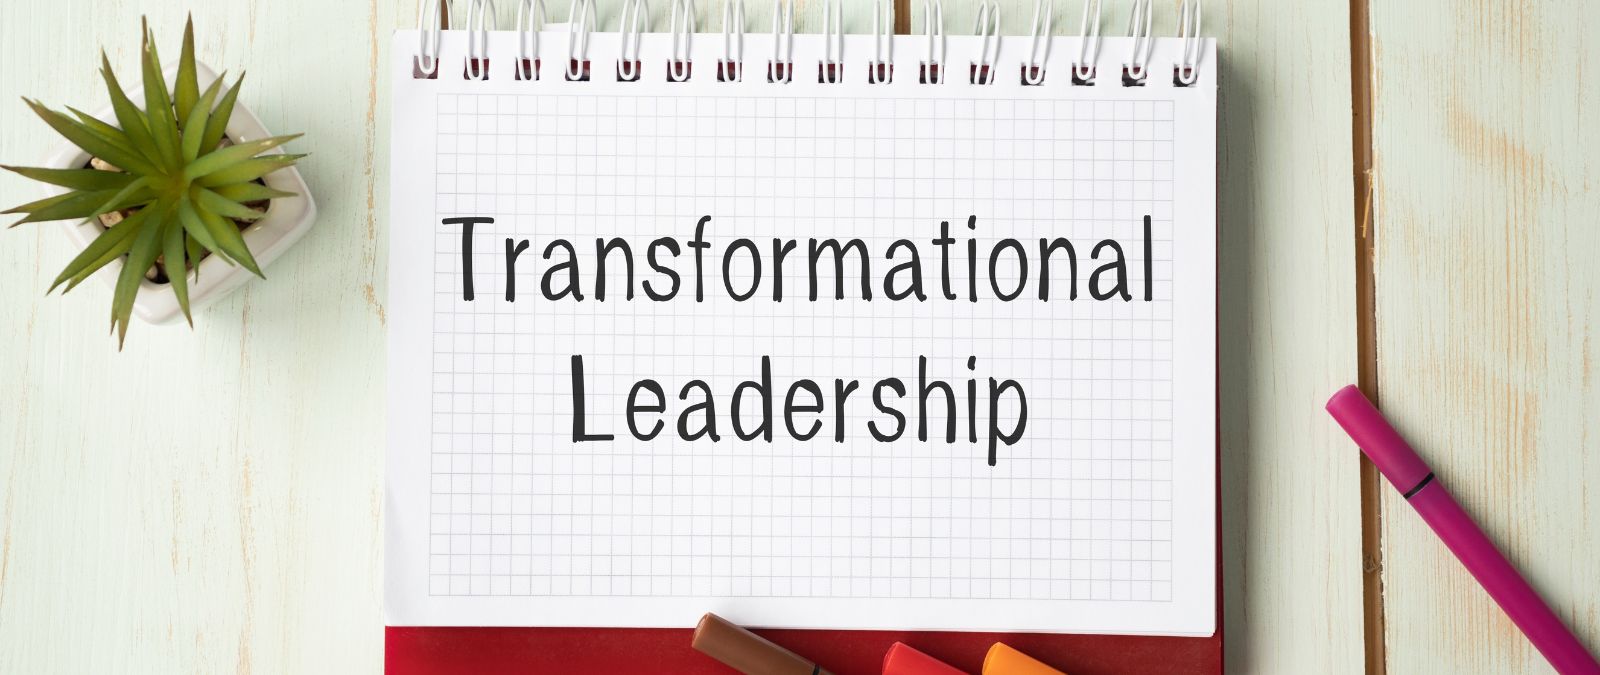 Transformationale Führung: Ein Block mit der Aufschrift "Transformational Leadership".